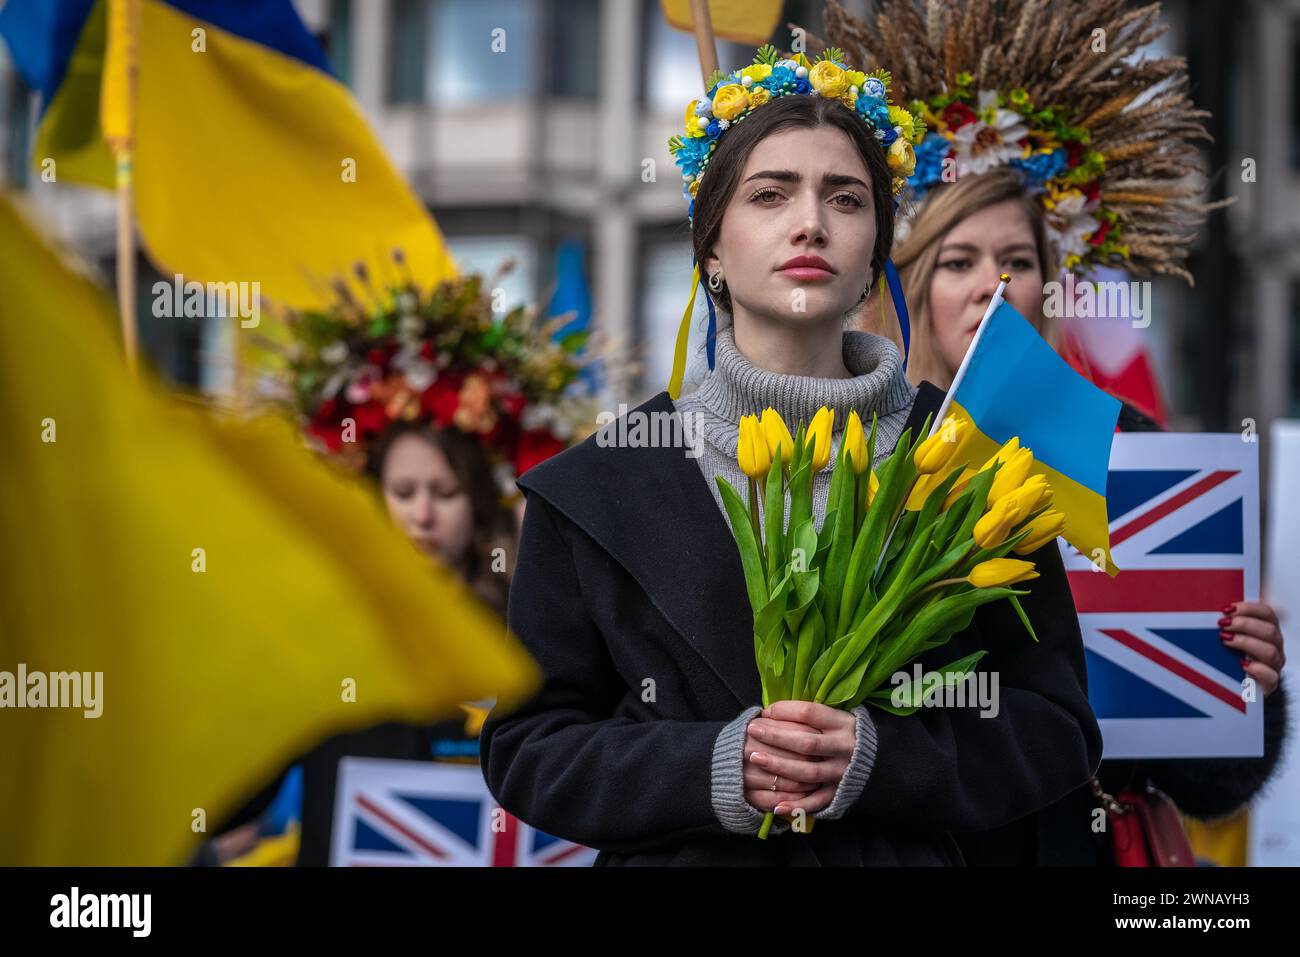 Les Ukrainiens et leurs partisans organisent une marche de protestation de masse dans le centre de Londres pour se rassembler sur Trafalgar Square à l'occasion du 2e anniversaire de l'invasion russe Banque D'Images